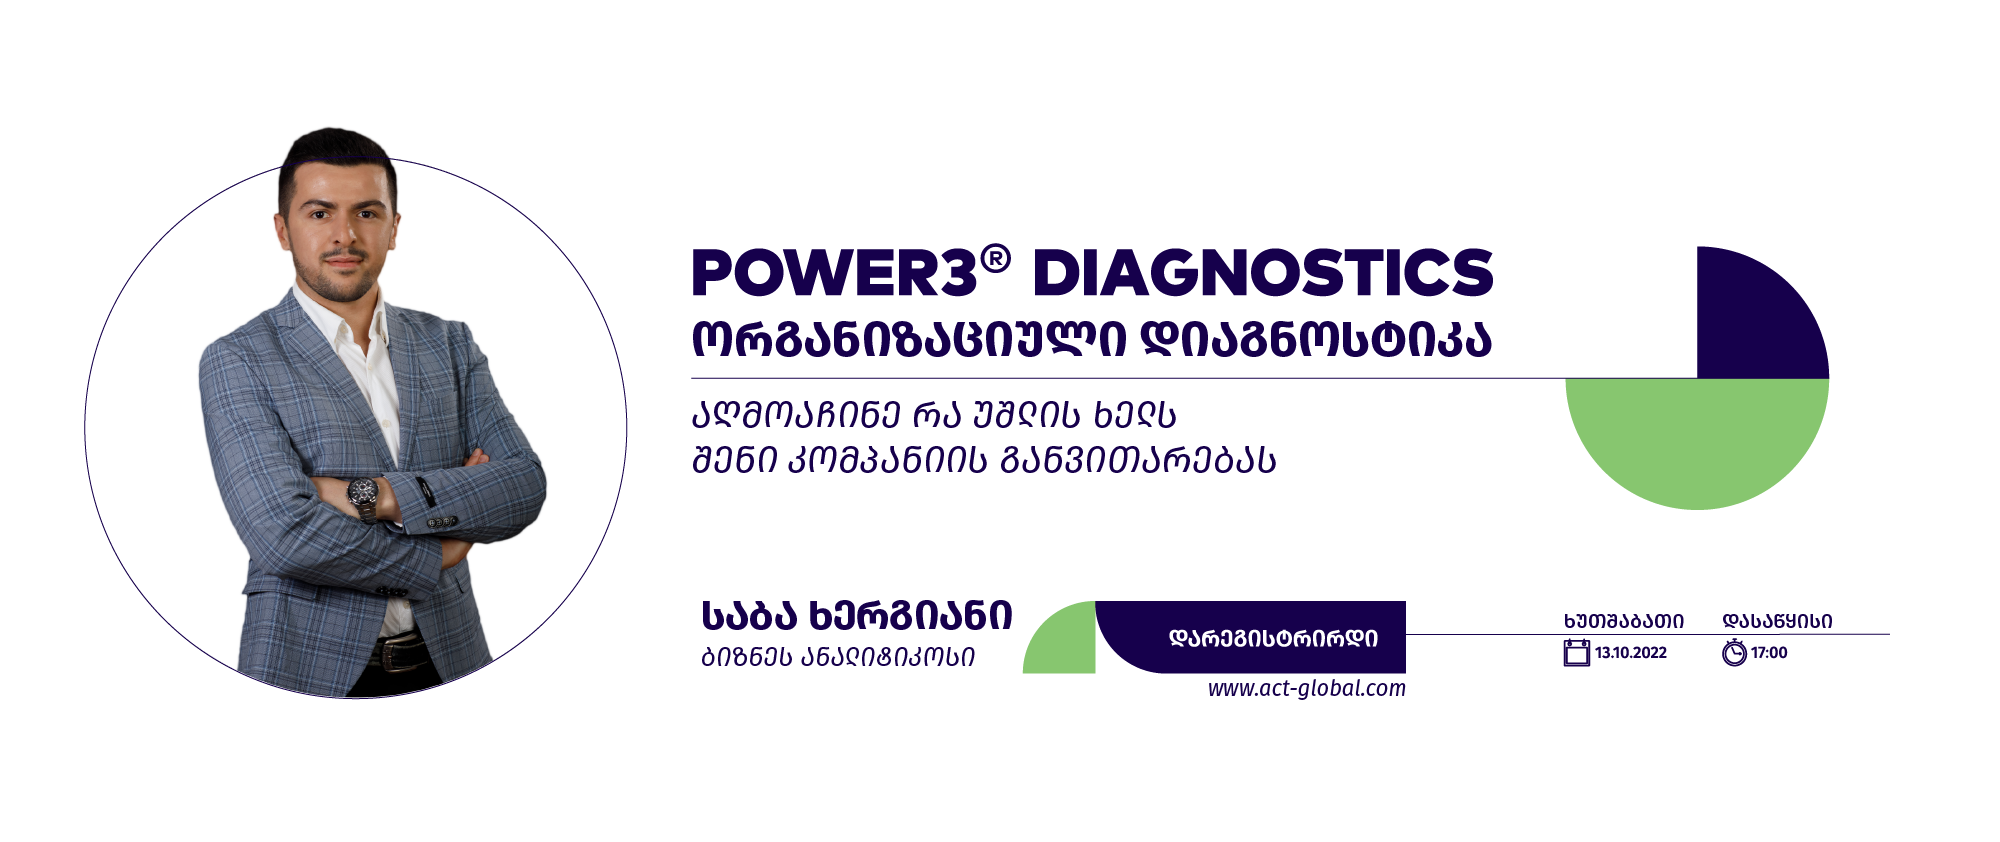 ეისითის ბიზნეს ანალიტიკოსმა საბა ხერგიანმა ორგანიზაციული სიჯანსაღის შემსწავლელი უნიკალური ინსტრუმენტი POWER3® Diagnostics - ორგანიზაციული დიაგნოსტიკა წარადგინა